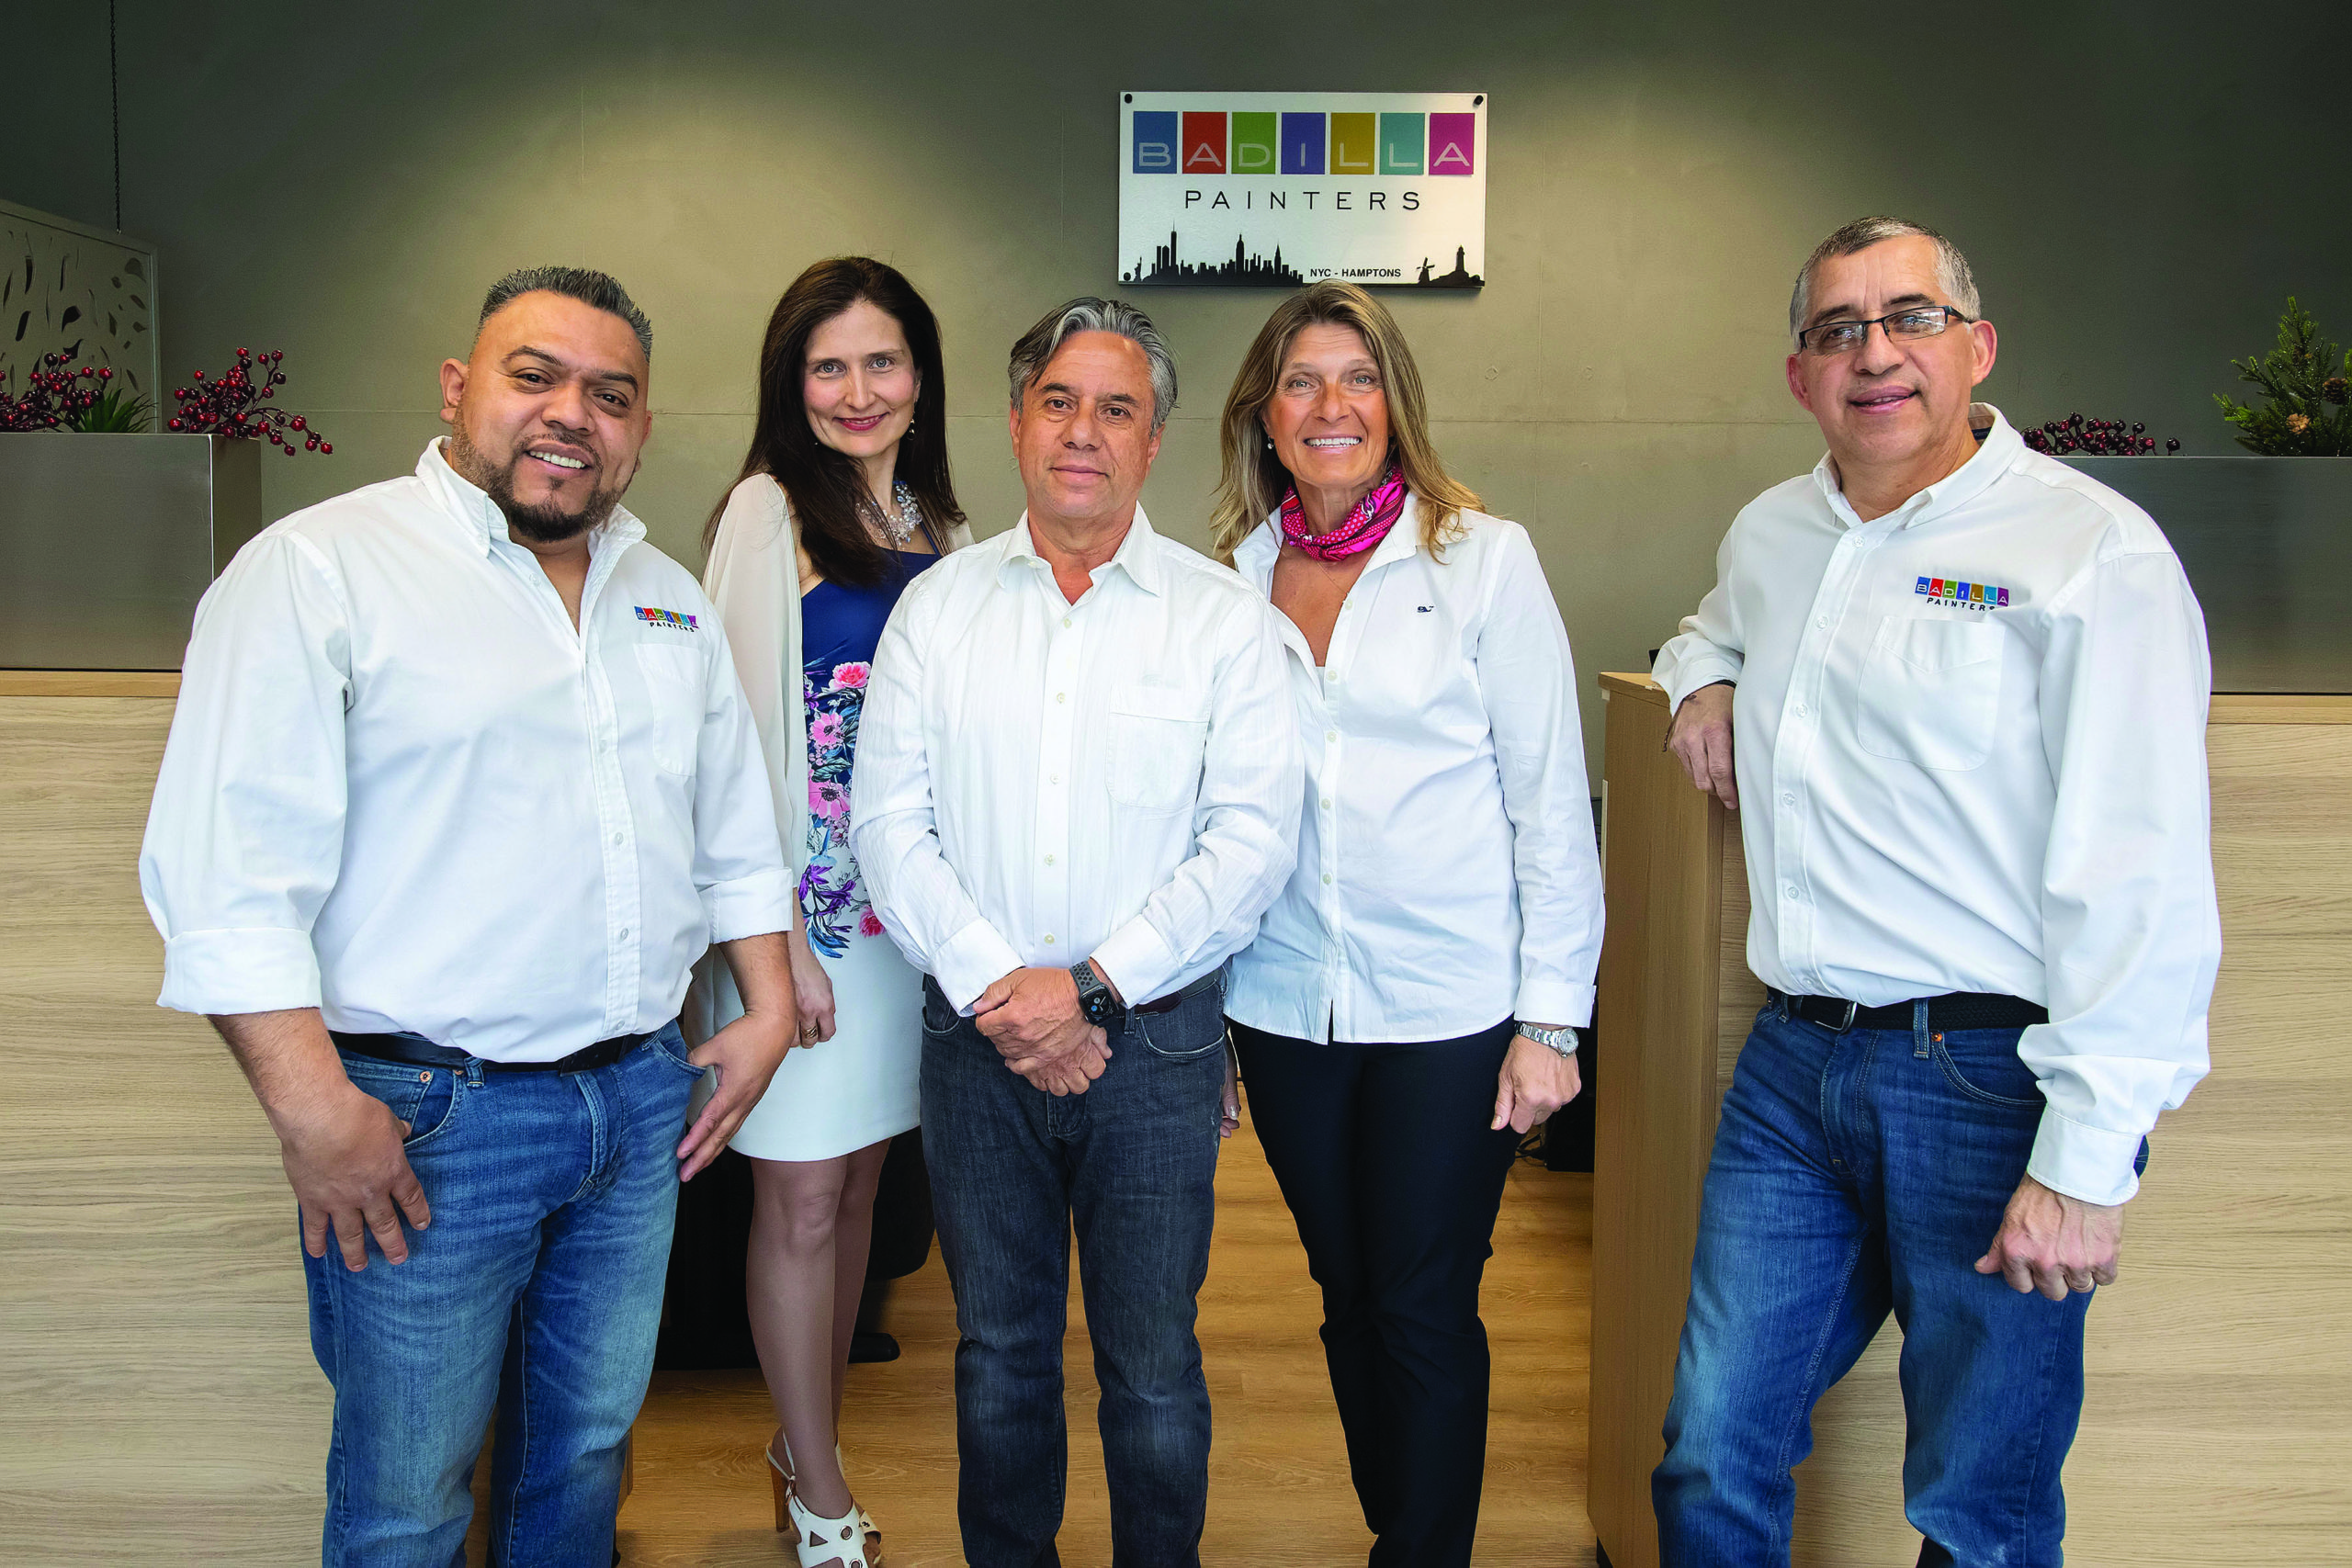 The Badilla Painters management team, from left to right, Arnulfo Vasquez, Julie Alvarado, Joe Badilla, Marina Leous, and Joe Sarasky.